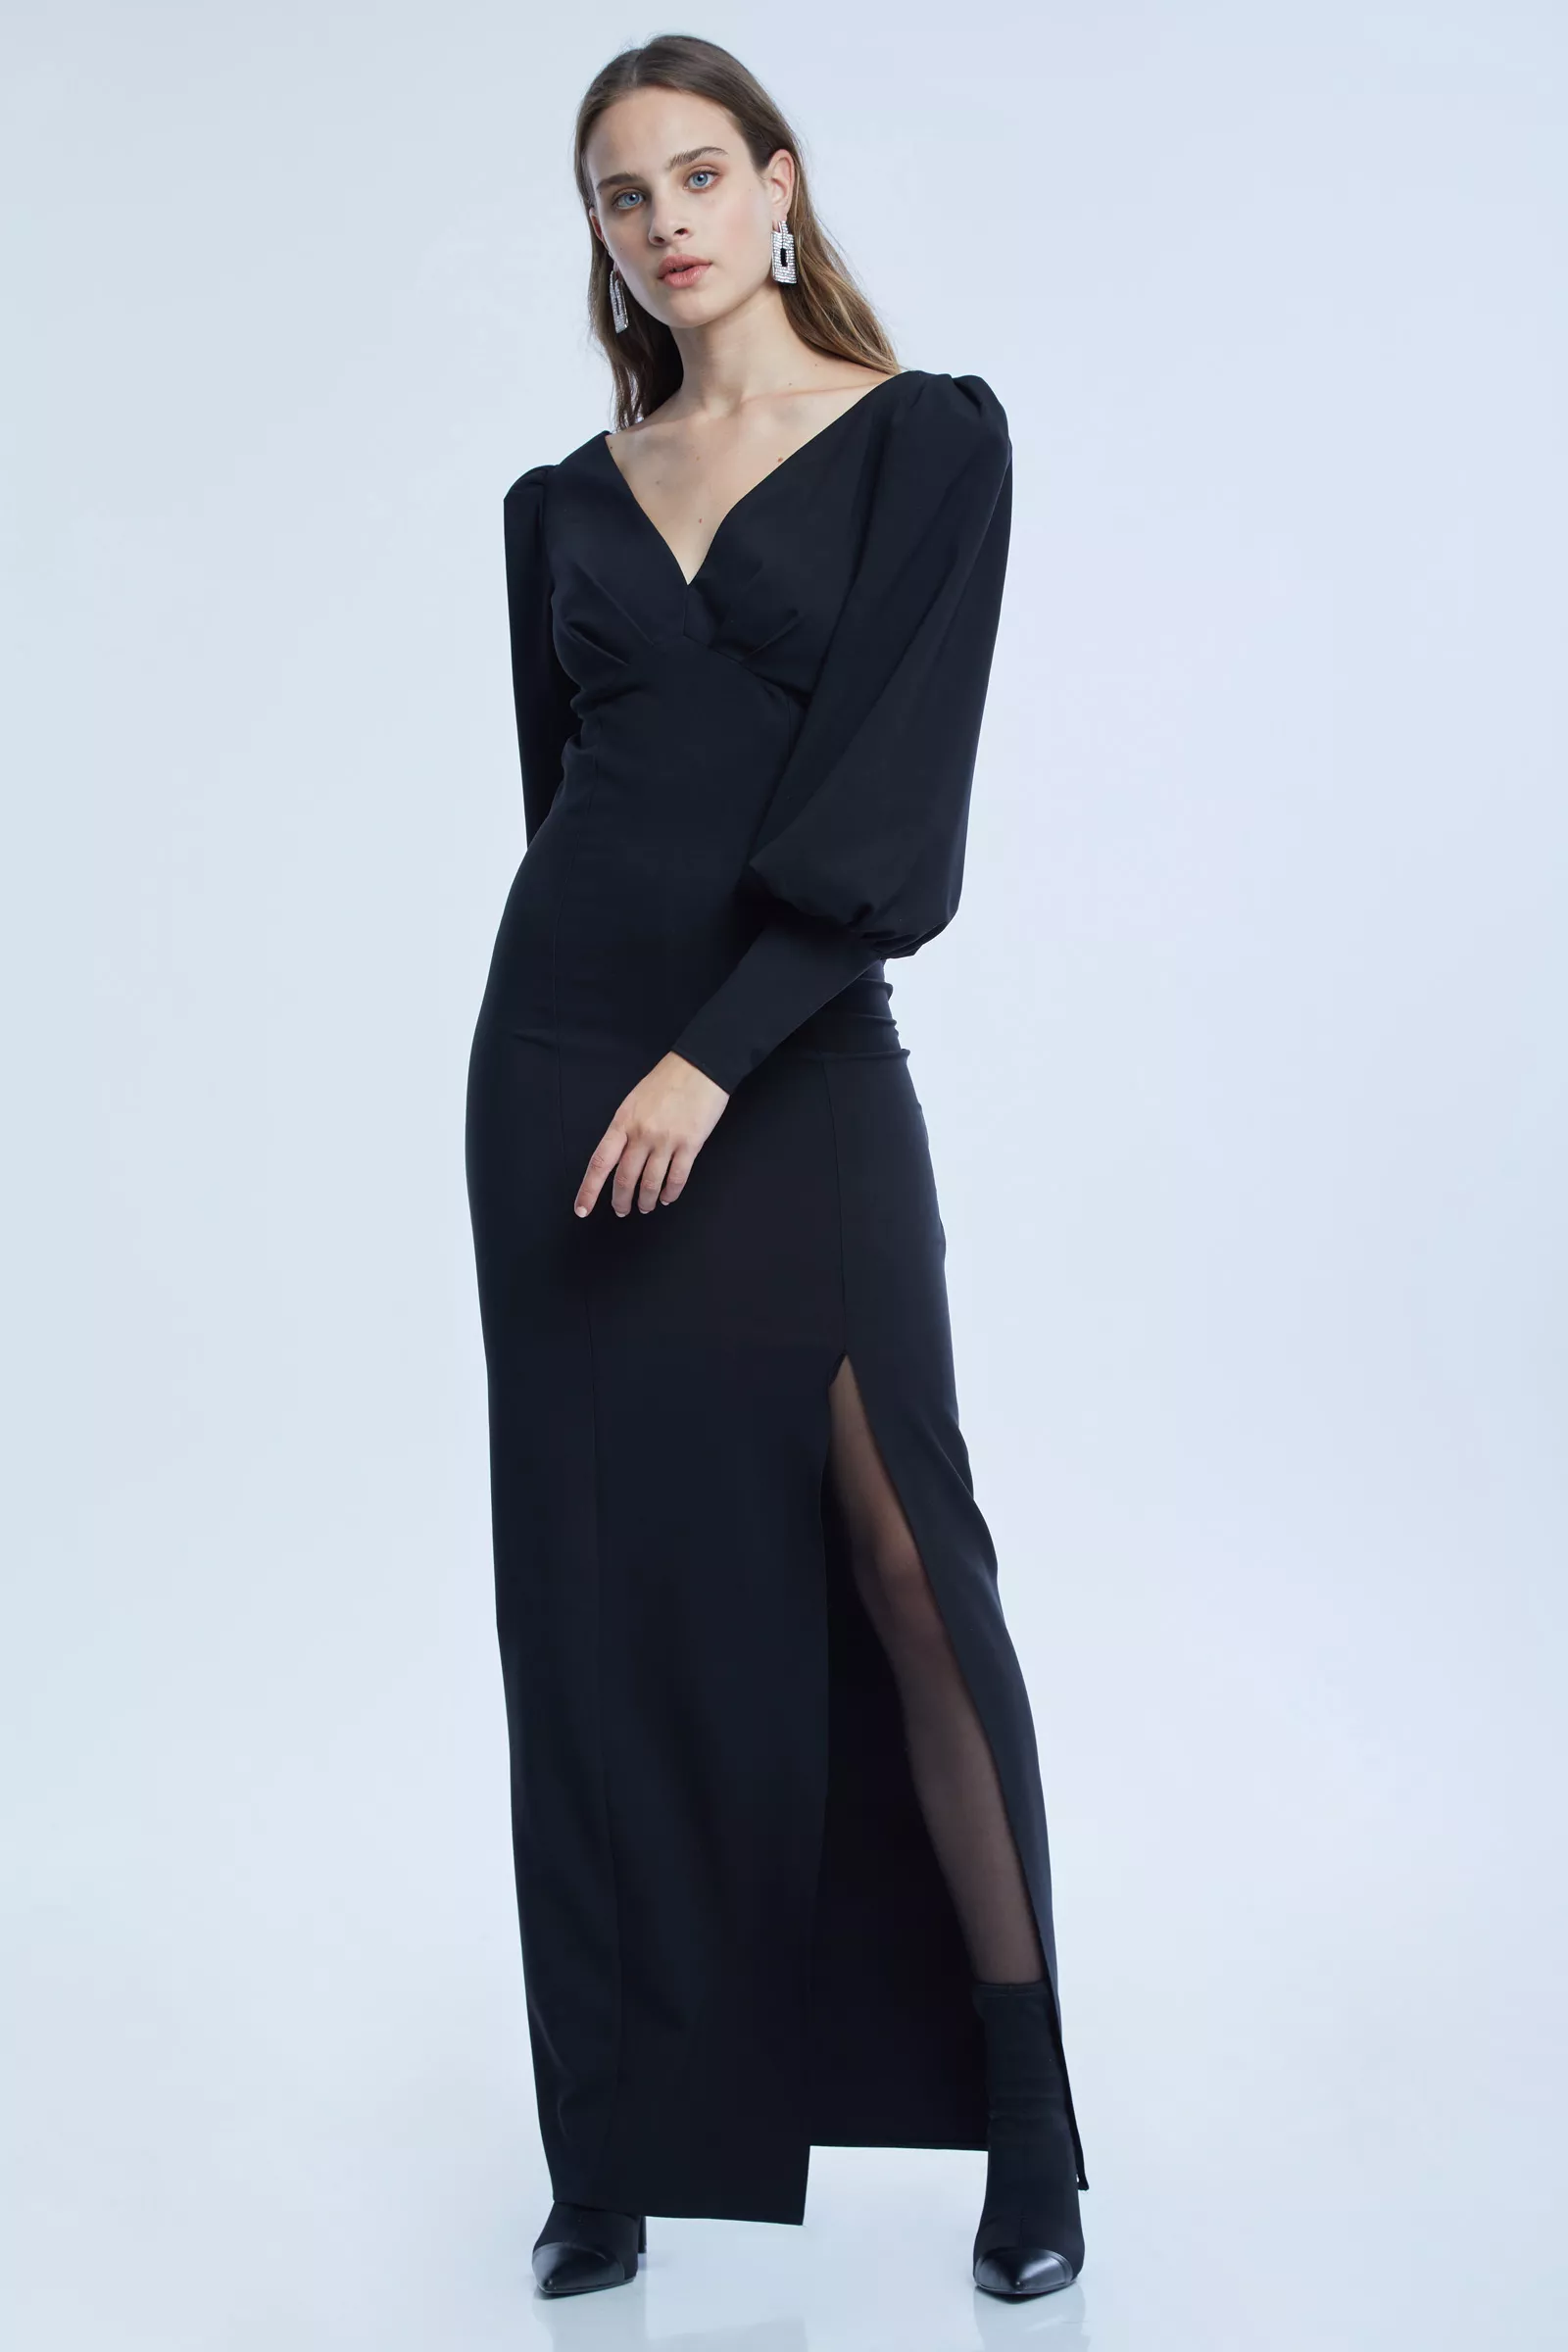 Black crepe long sleeve maxi dress